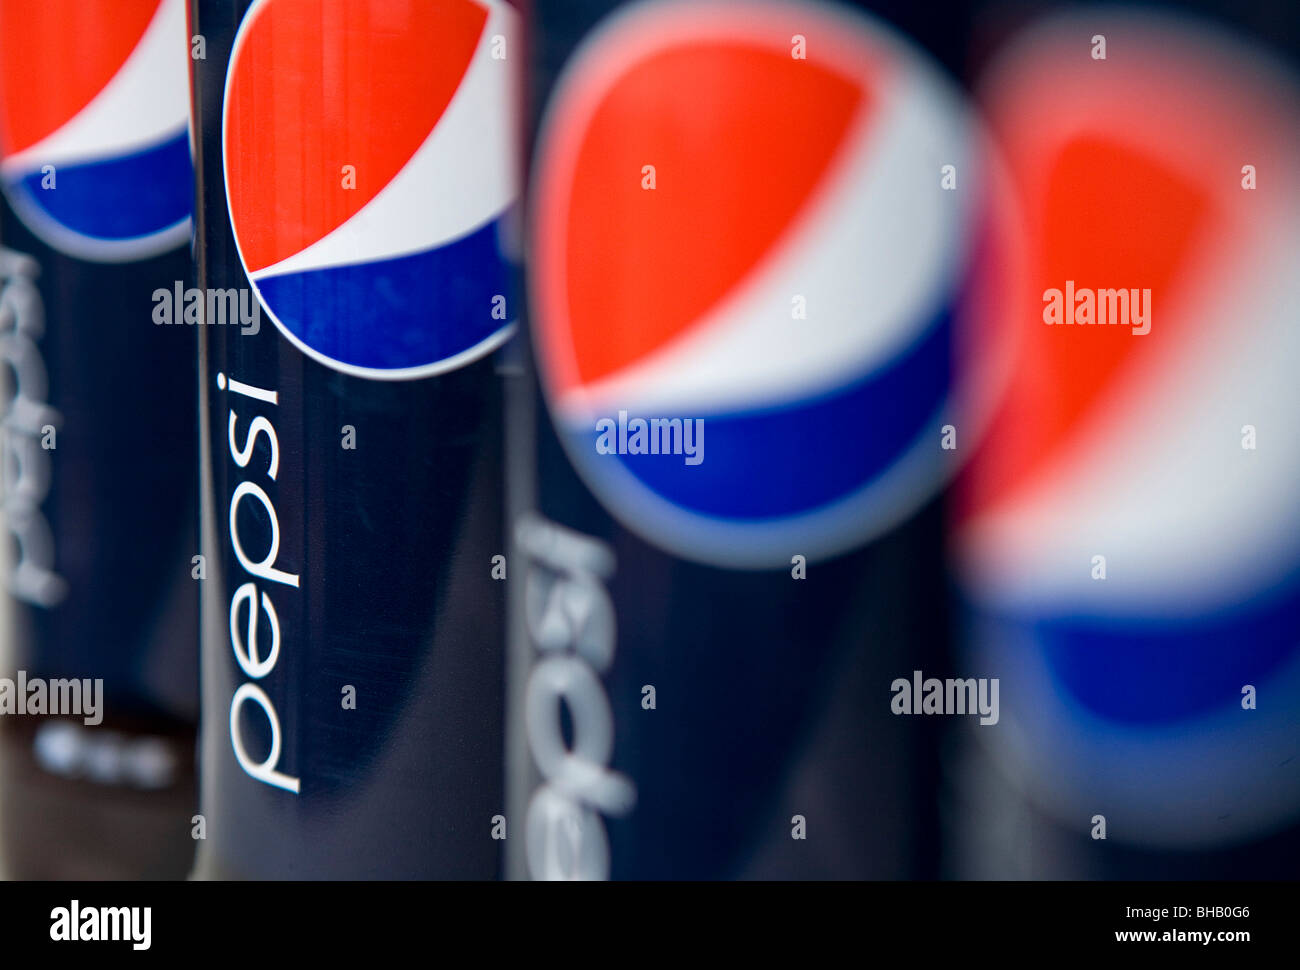 Un raggruppamento di bottiglie di Pepsi. Foto Stock